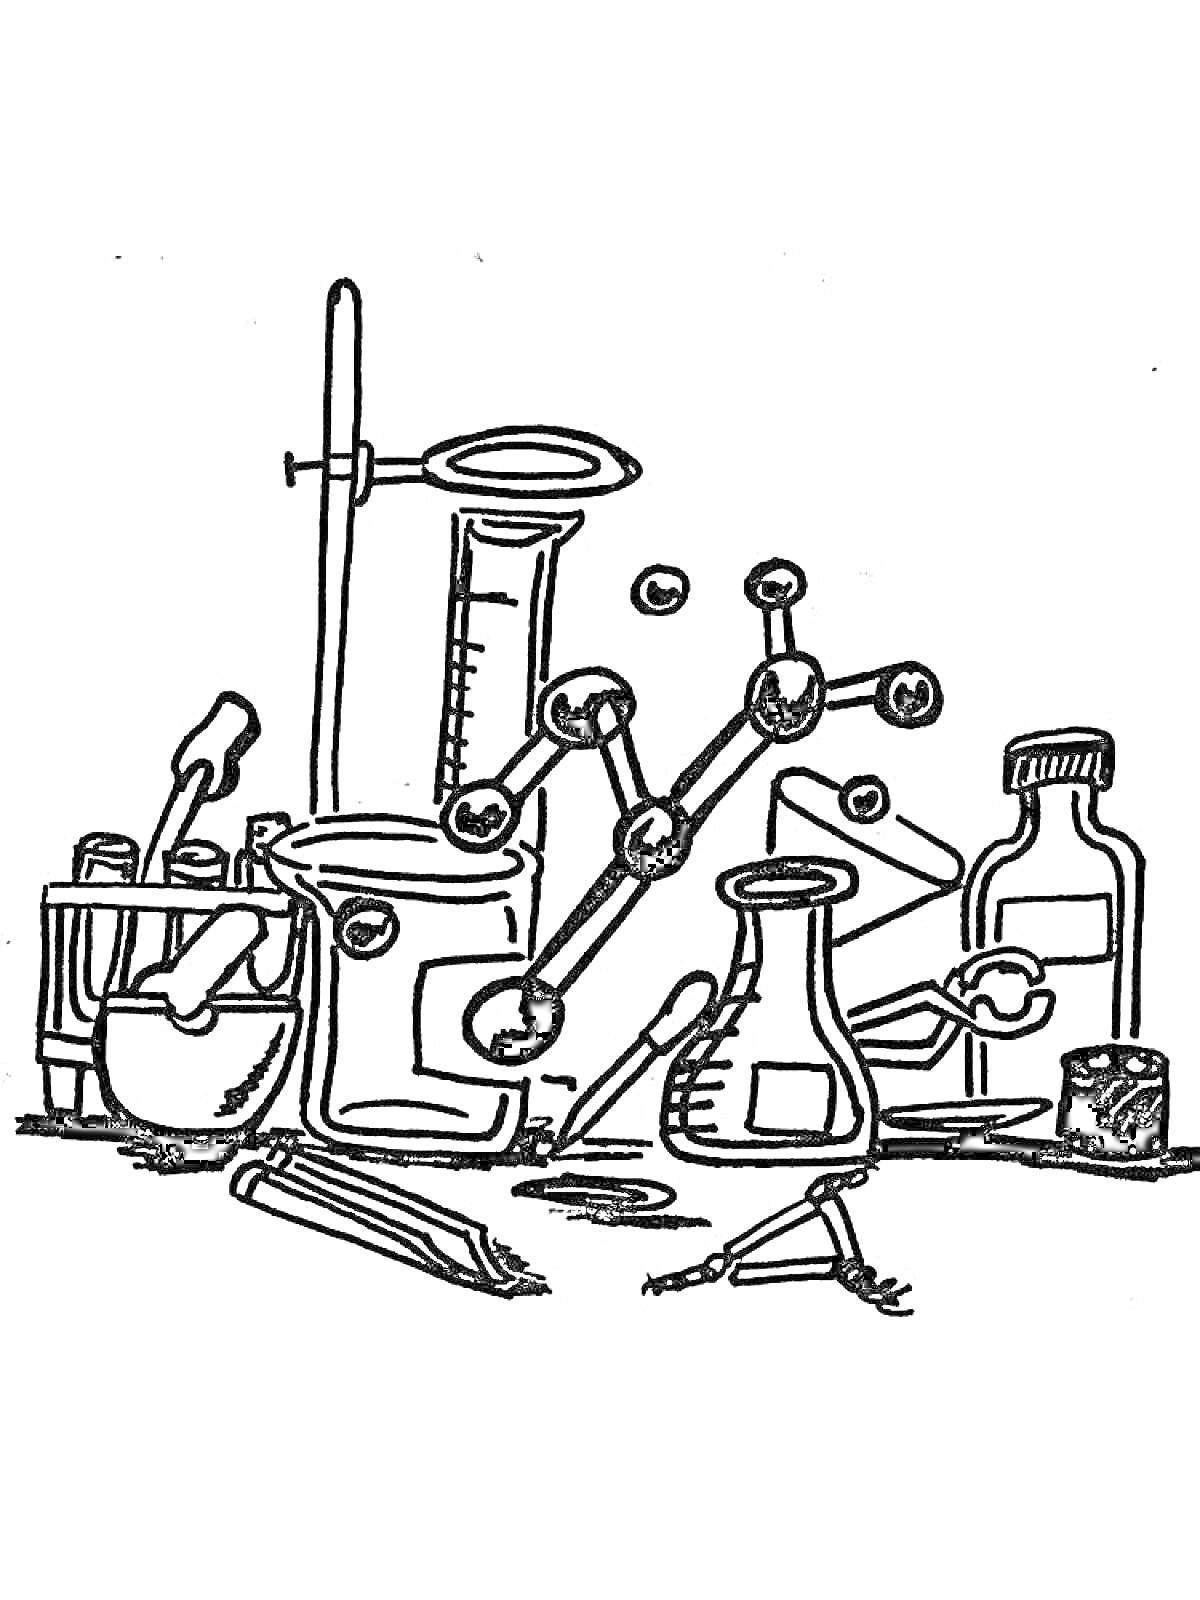 Лаборатория с пробирками, колбой, склянкой, штативом, молекулой, ступкой с пестиком, пипеткой и чашкой Петри